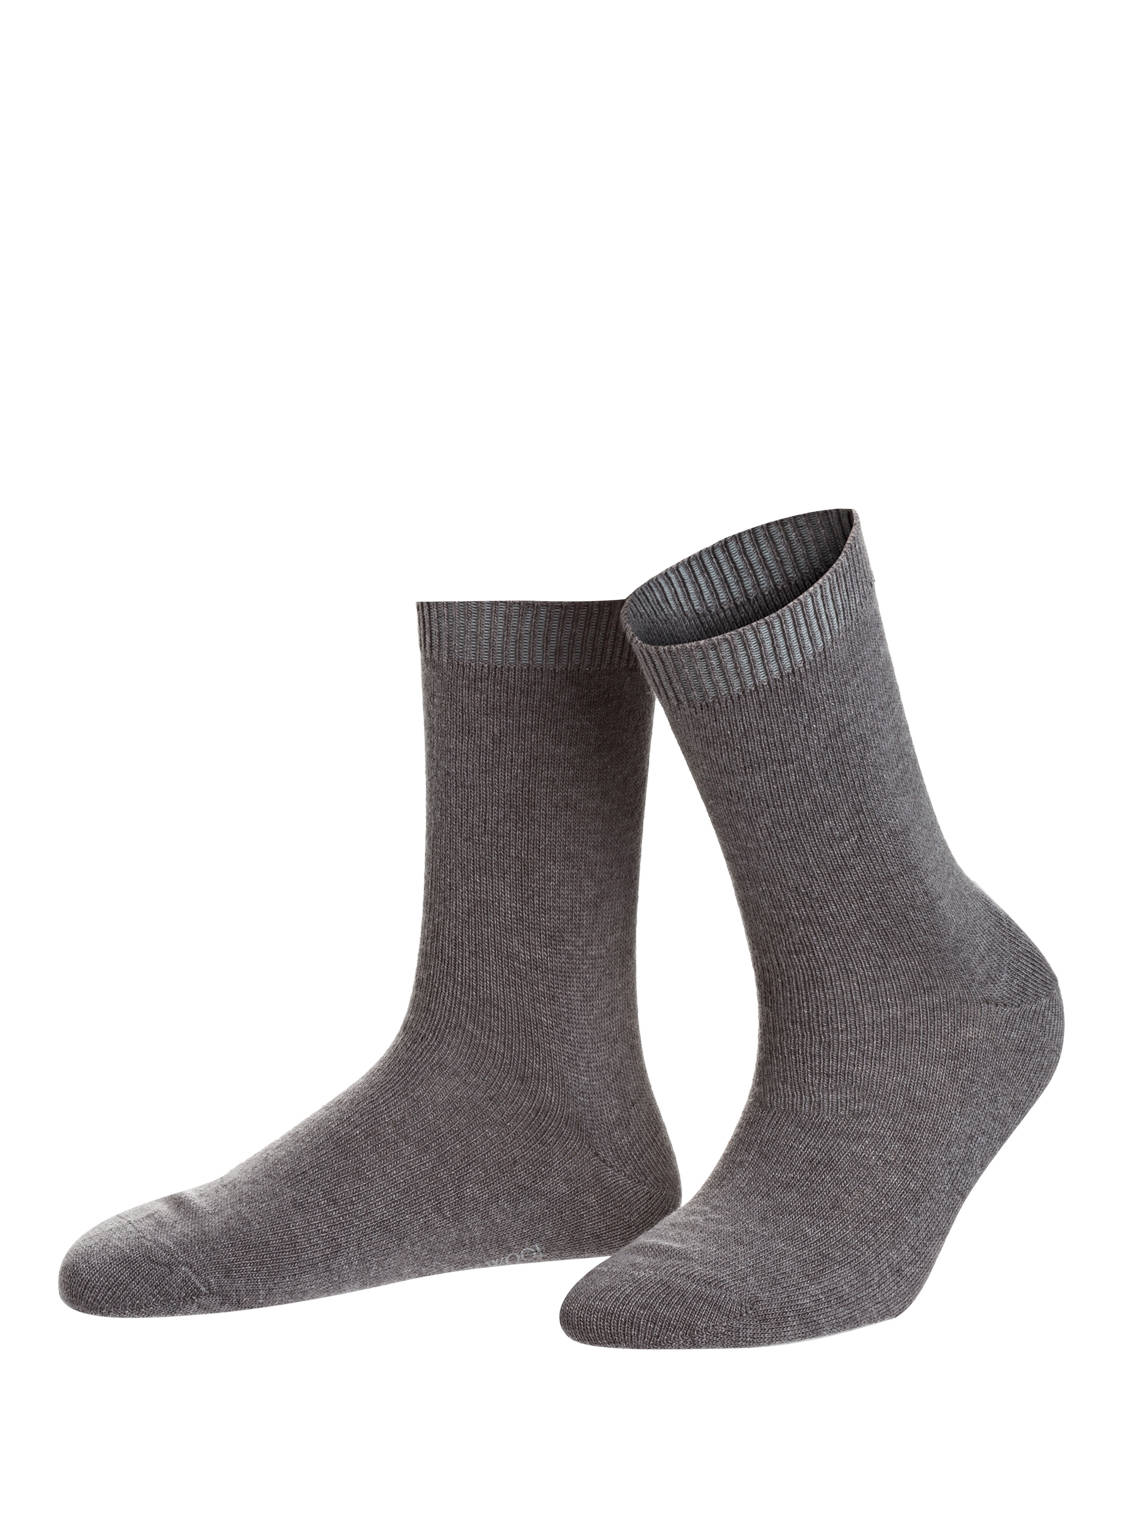 Falke Socken Cosy Wool grau